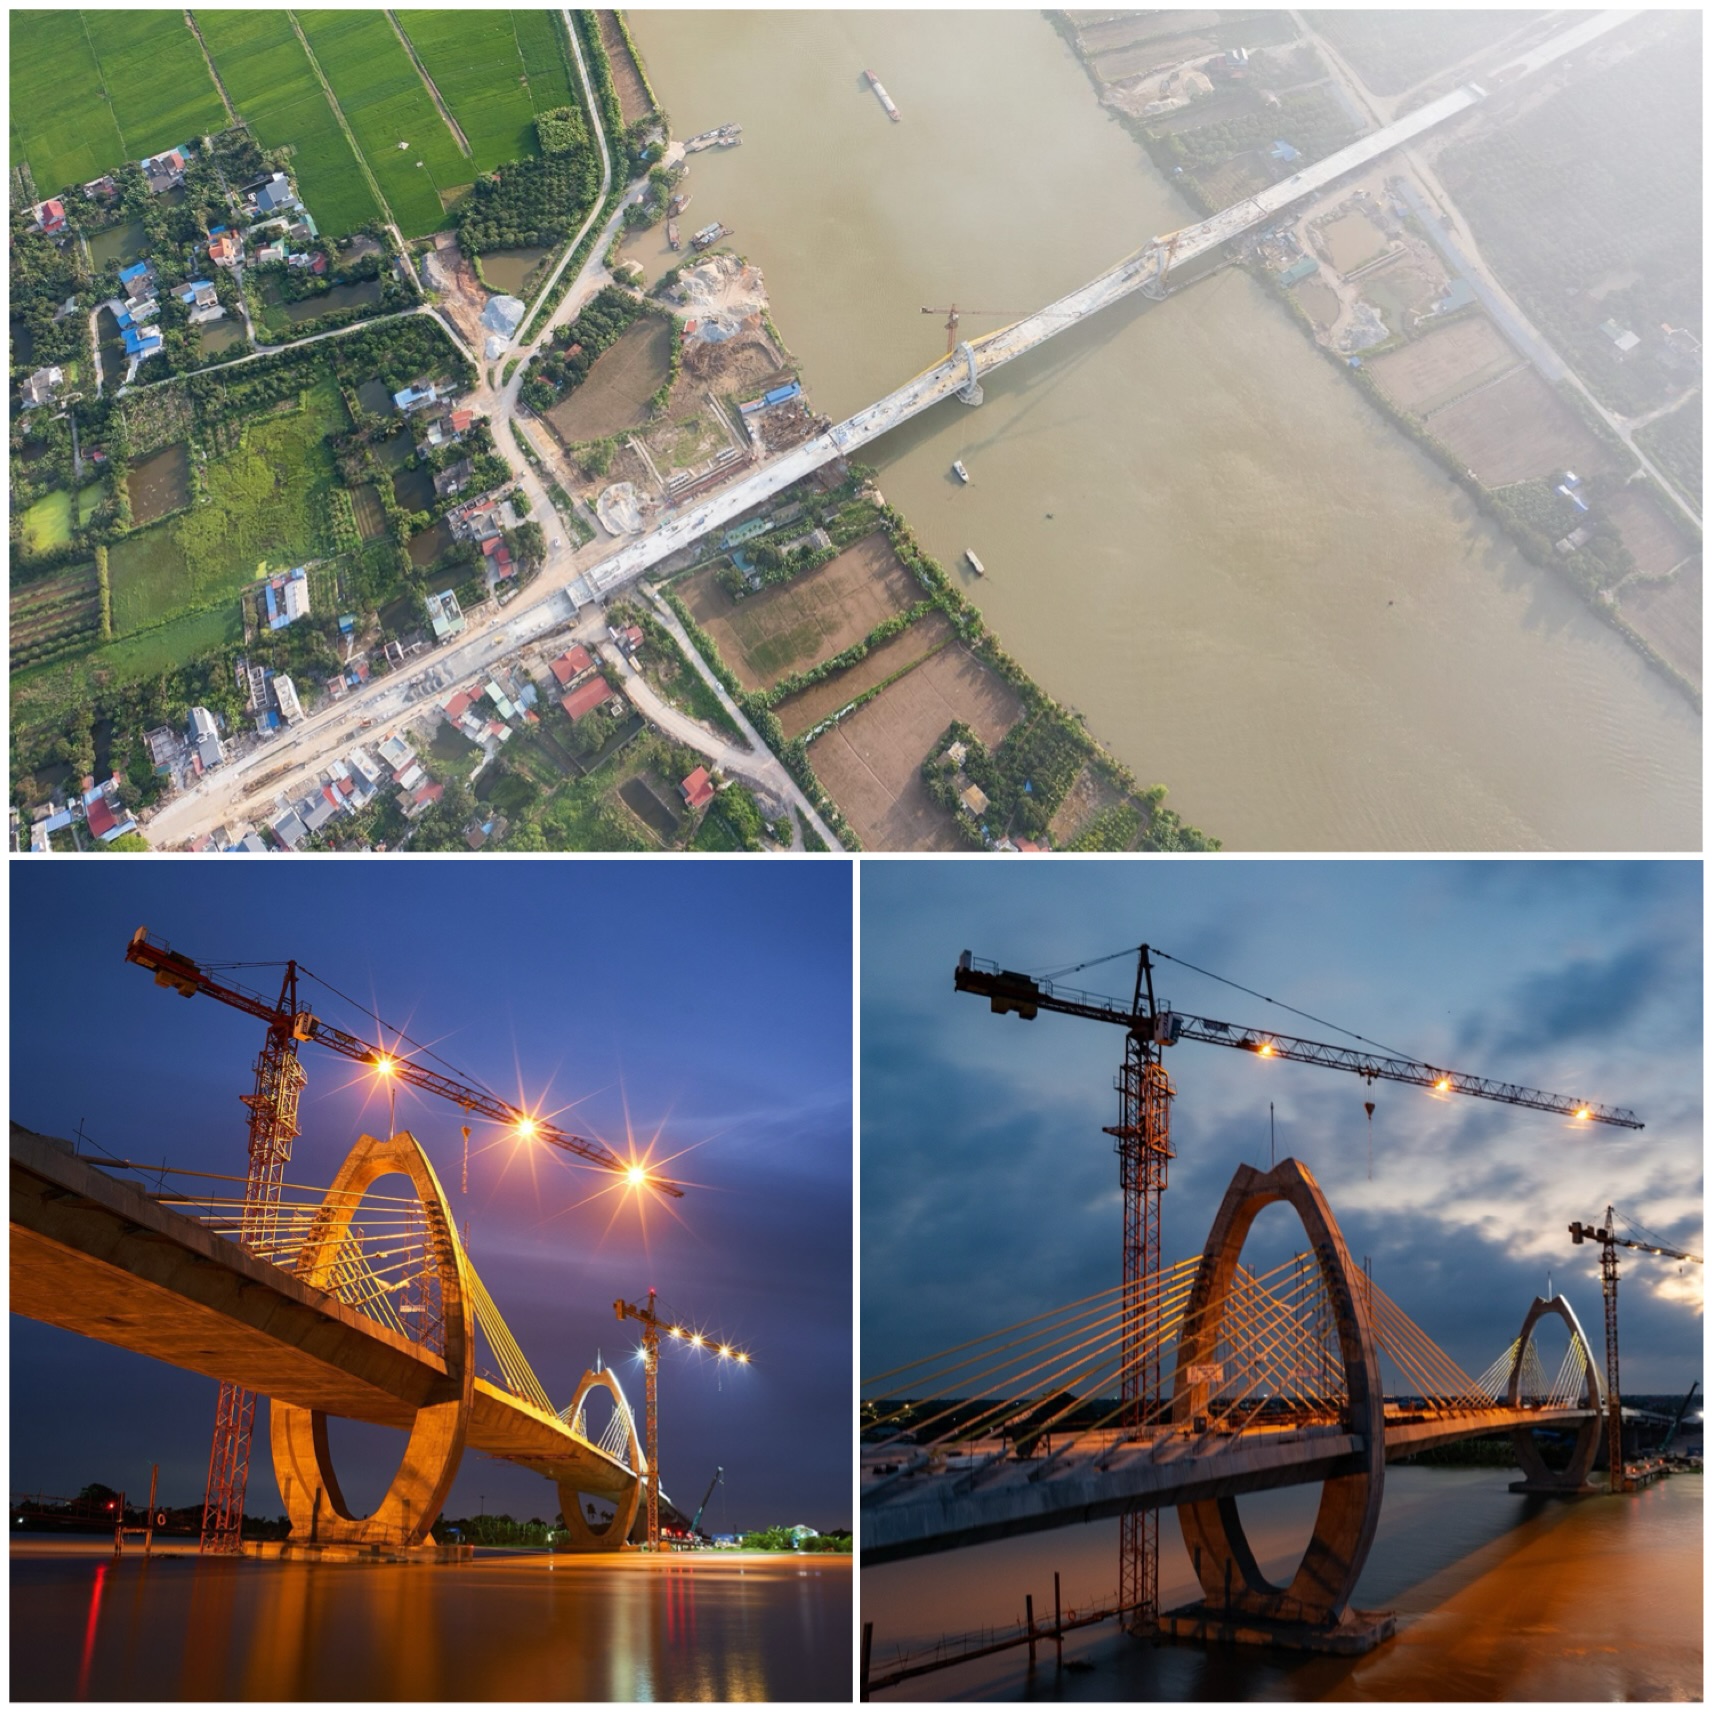 cầu Quang Thanh nối huyện An Lão của thành phố Hải Phòng với huyện Thanh Hà của tỉnh Hải Dương qua sông Văn Úc